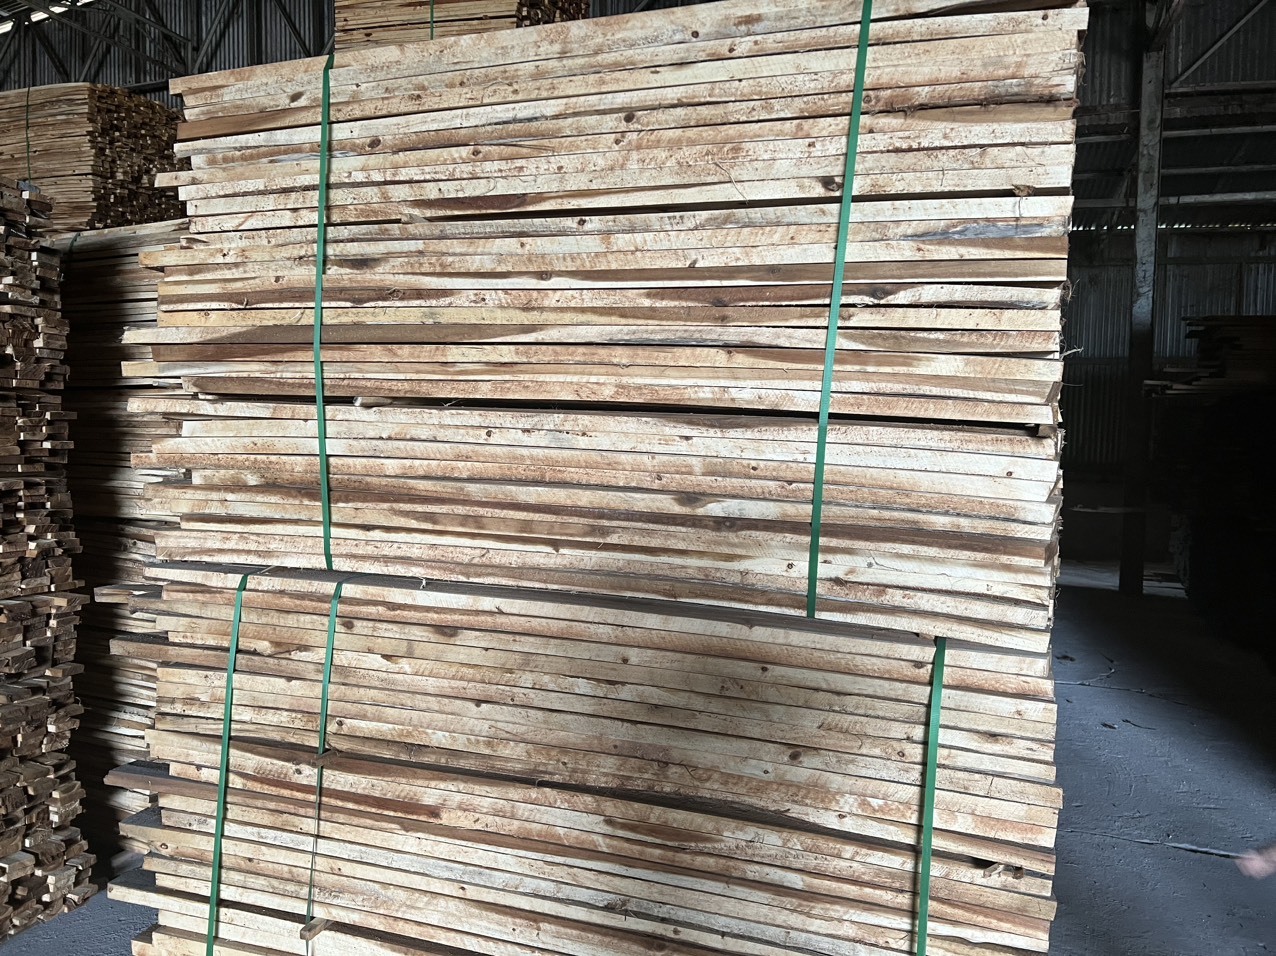 Công ty An Phúc cần tìm đơn vị vận tải biển chuyển hàng gỗ keo xẻ đi Ấn Độ